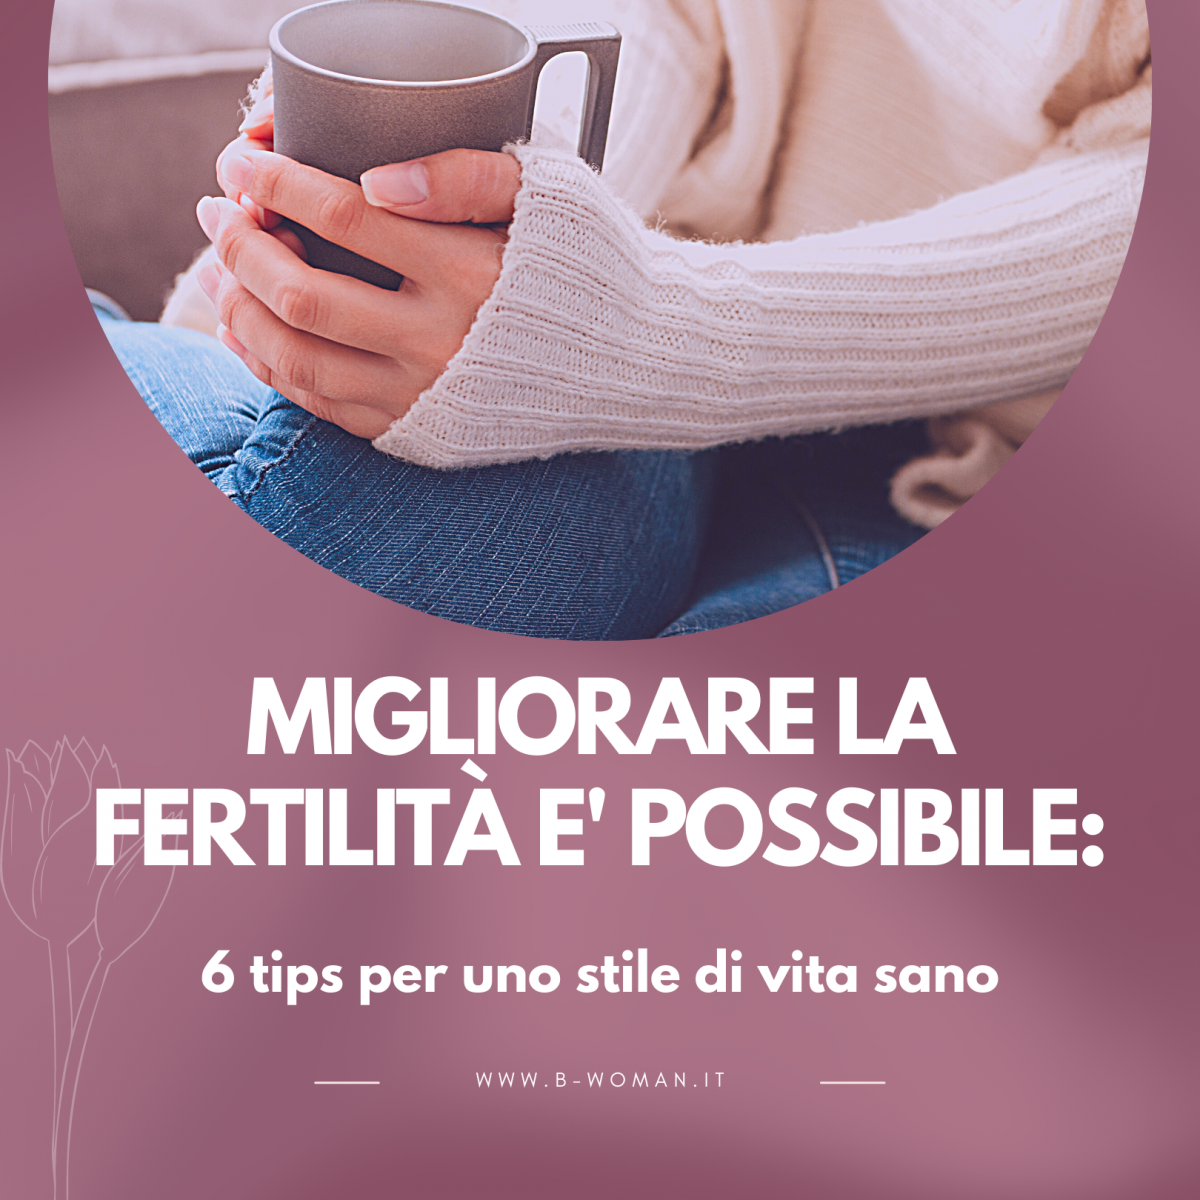 Migliorare-la-fertilità-è-possibile-6-tips-per-uno-stile-di-vita-sano--1200x1200.png